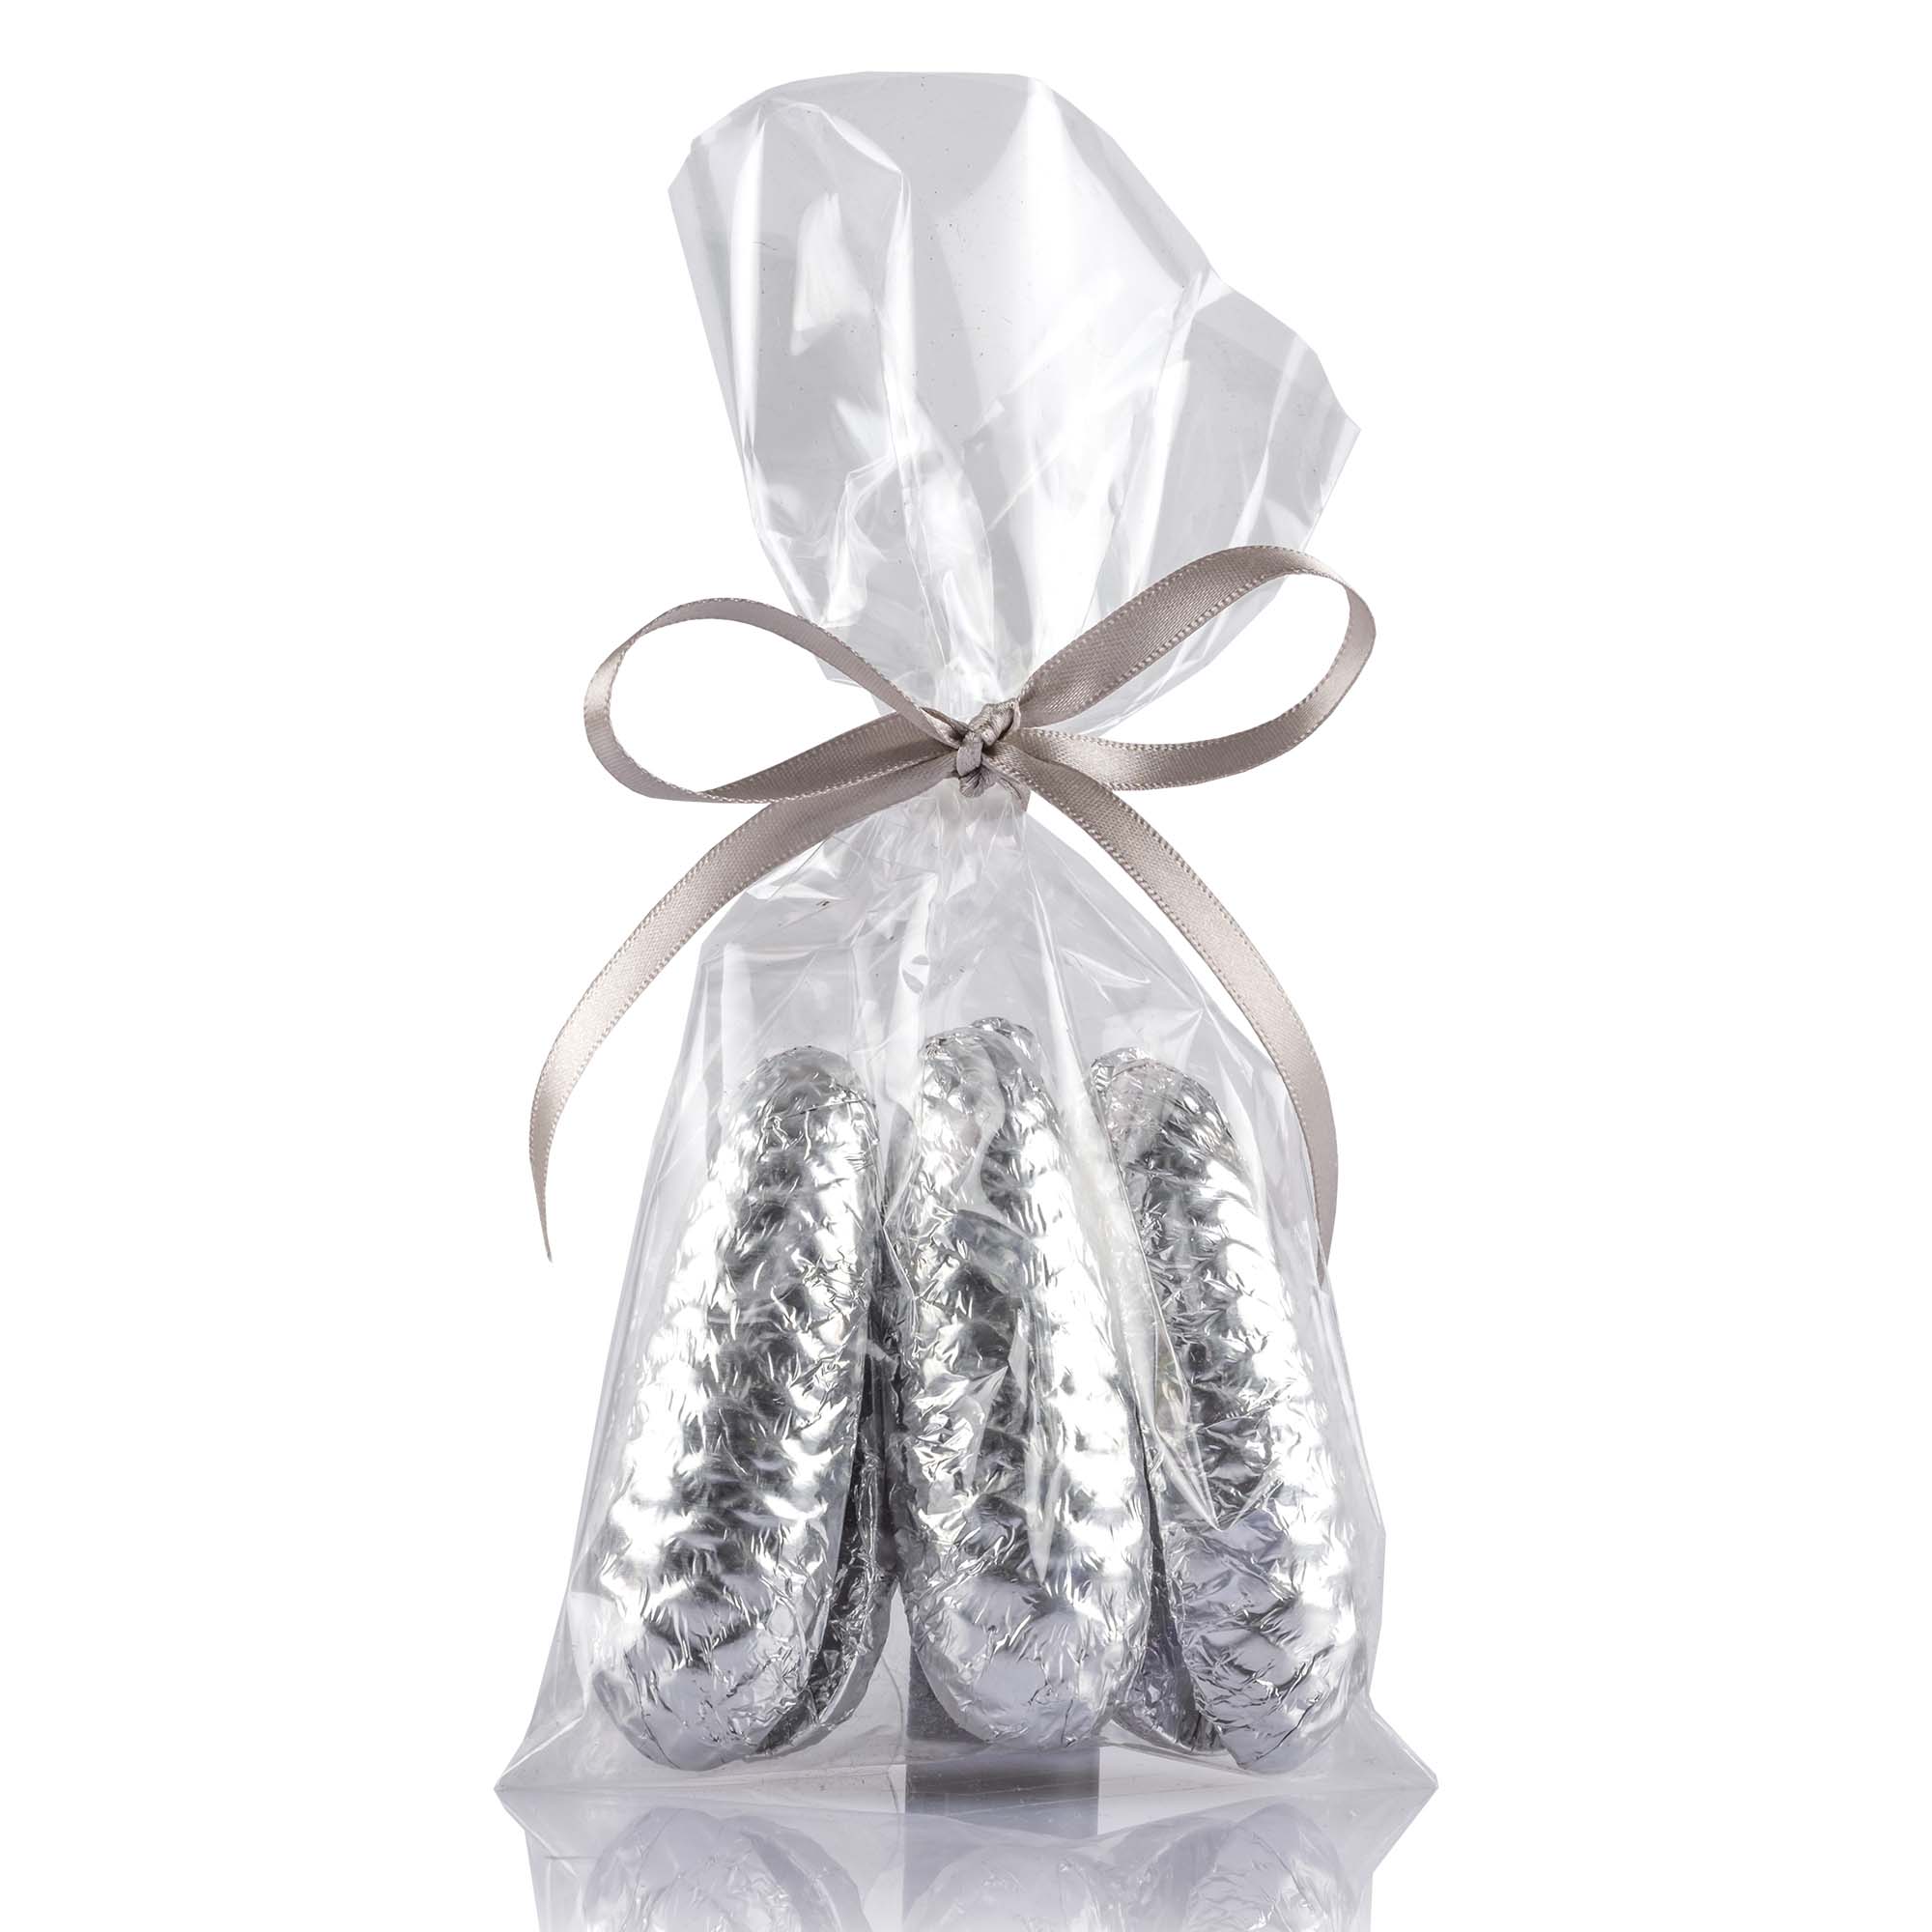 Schokoladen-Tannenzapfen gefüllt Silber im Säckli 6 Stk, 90g